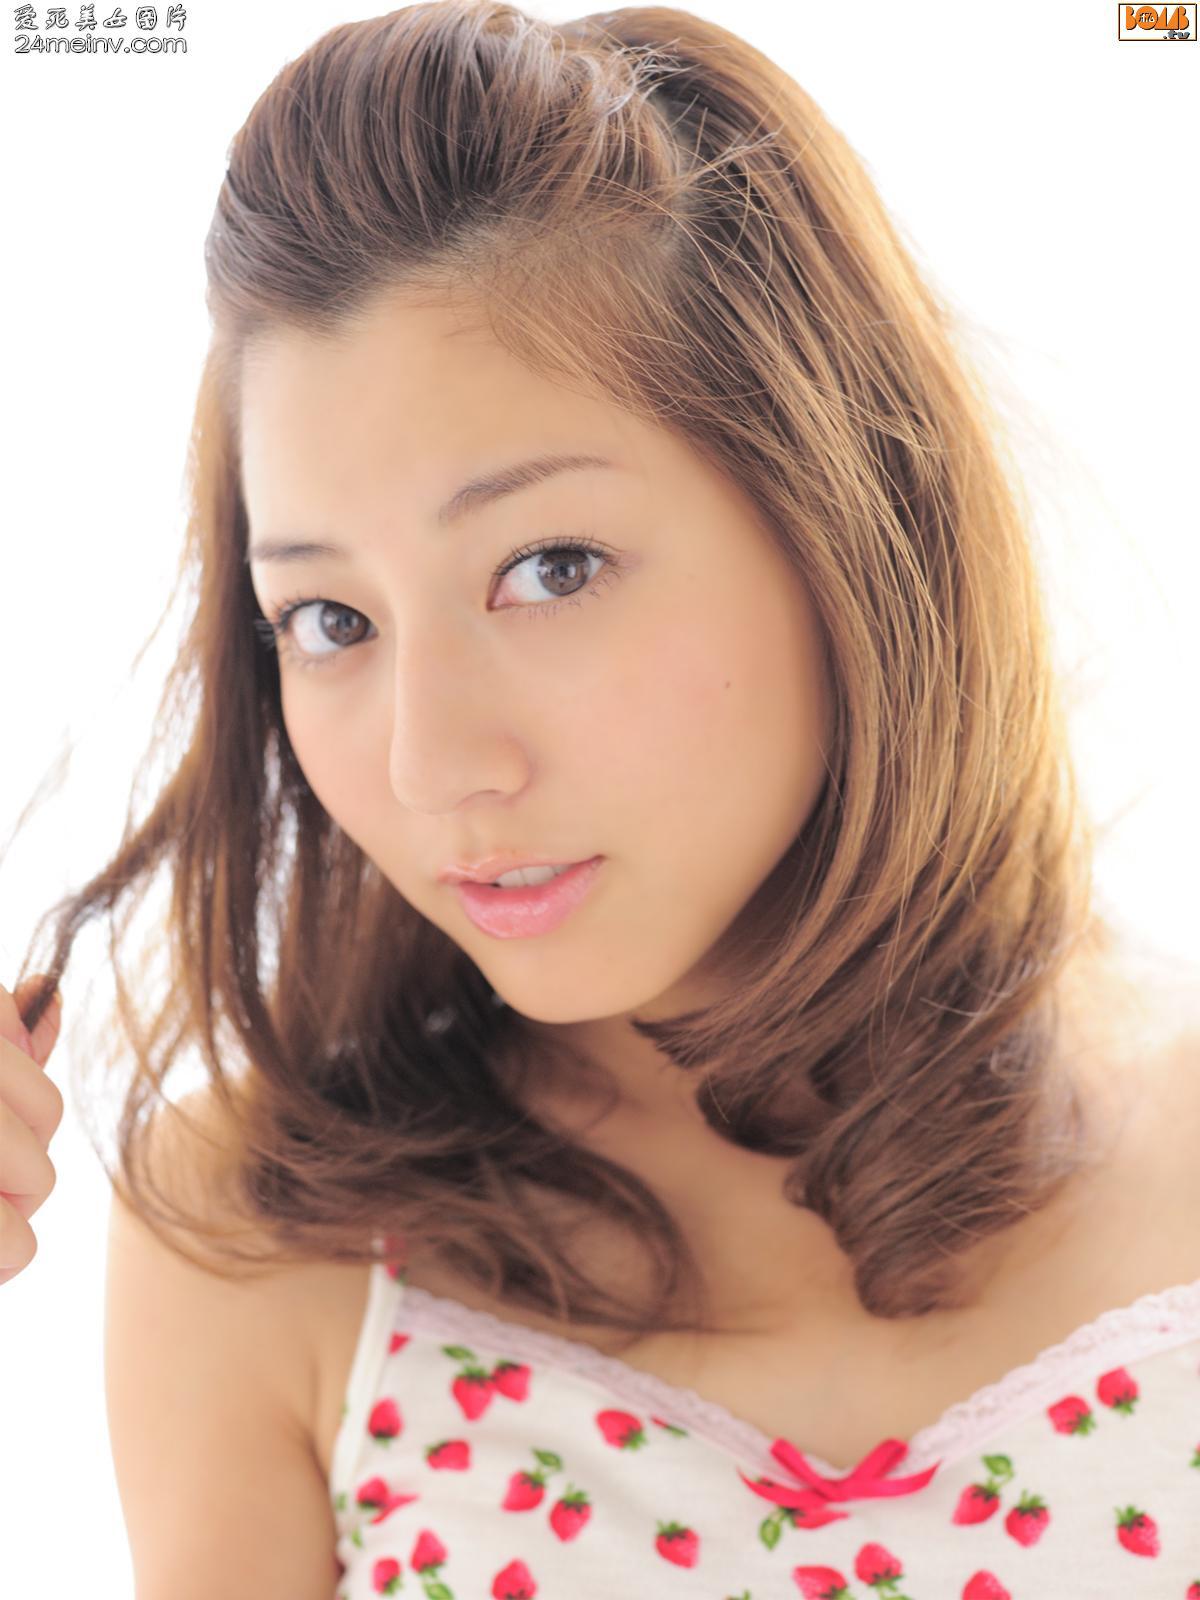 Japan's most beautiful actress - Yuki Sugimoto